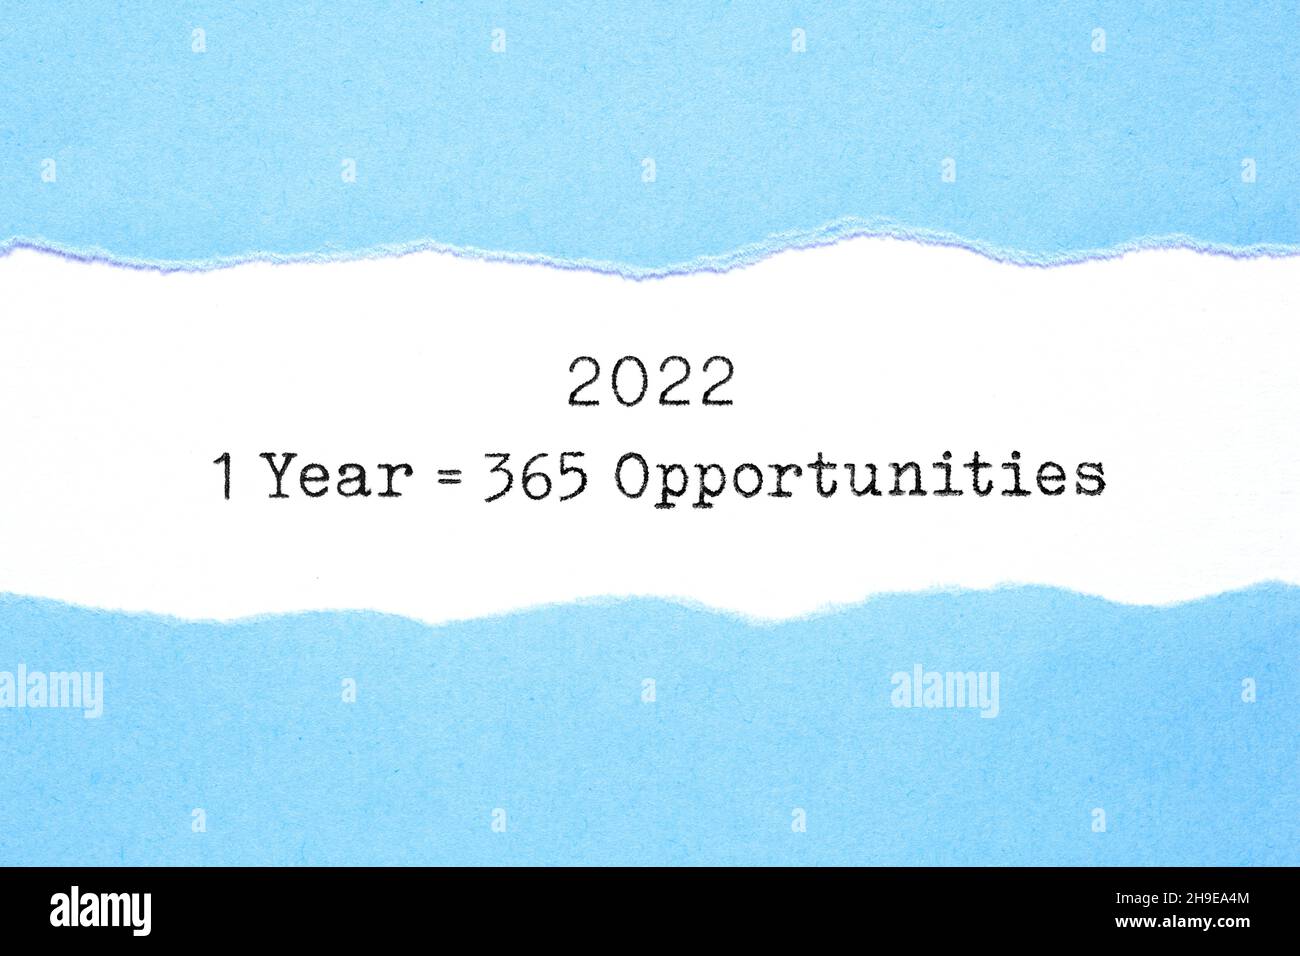 Inspirierende Nachricht 1 Jahr 2022 gleich 365 Gelegenheiten, die hinter zerrissenen blauen Papier erscheinen, das auf weißem Blatt getippt wurde. Stockfoto